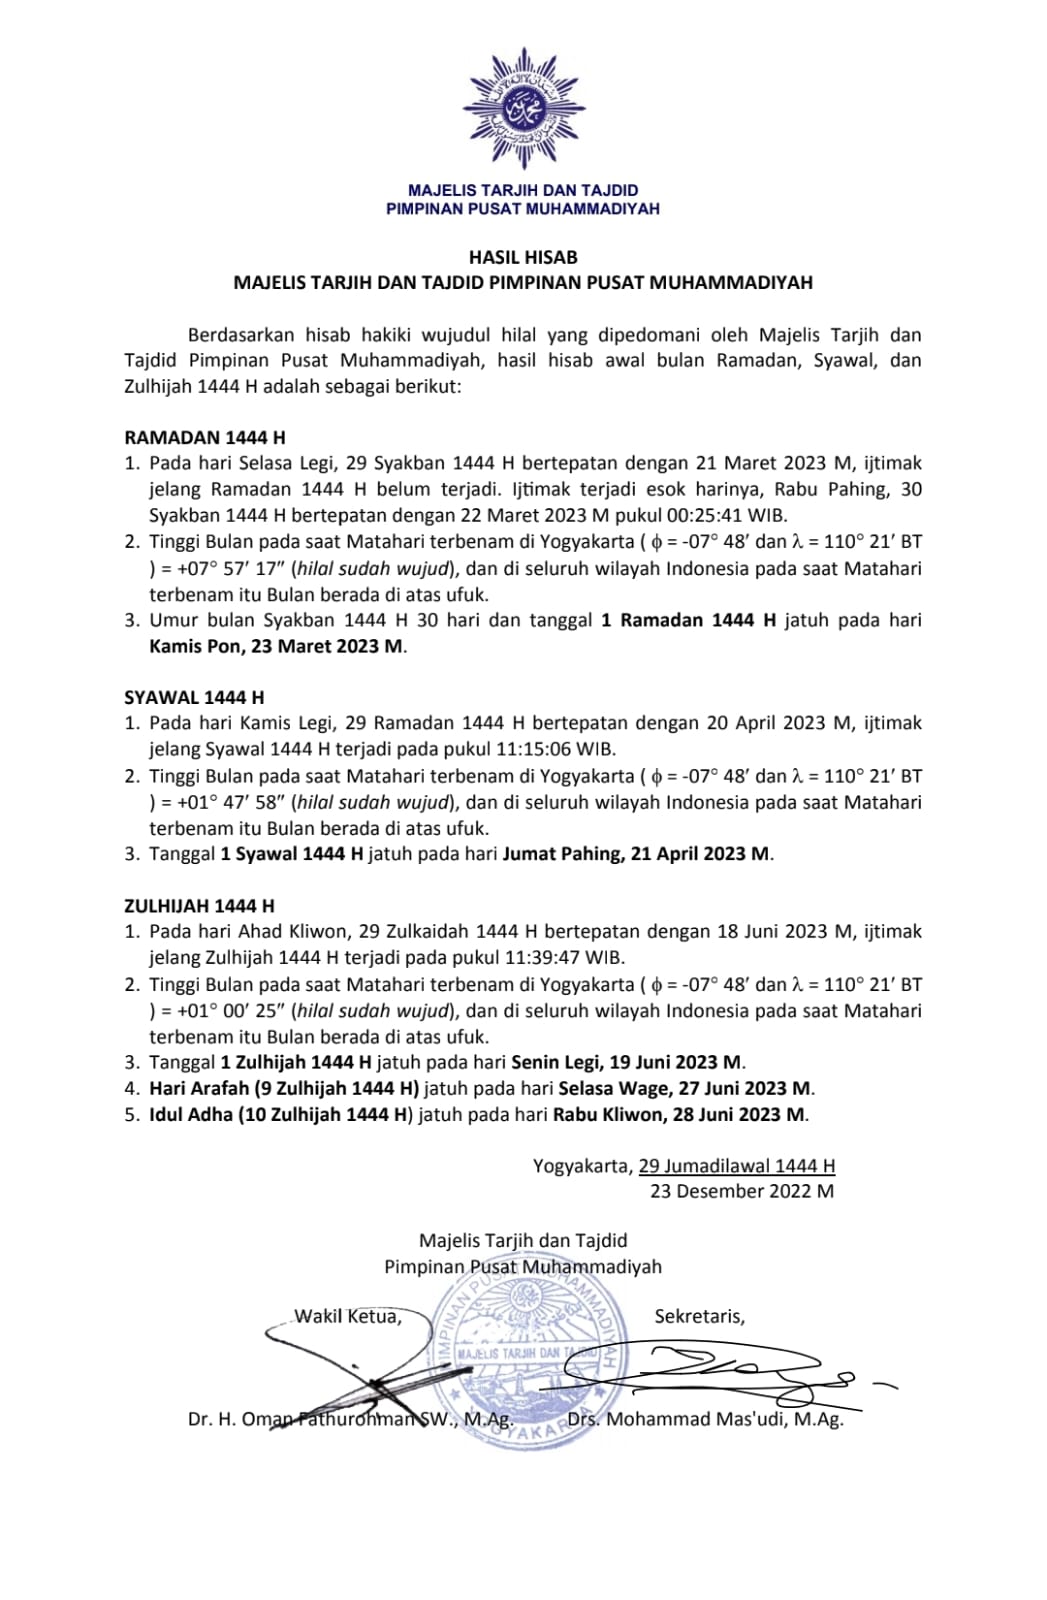 Awal Puasa Muhammadiyah 2023